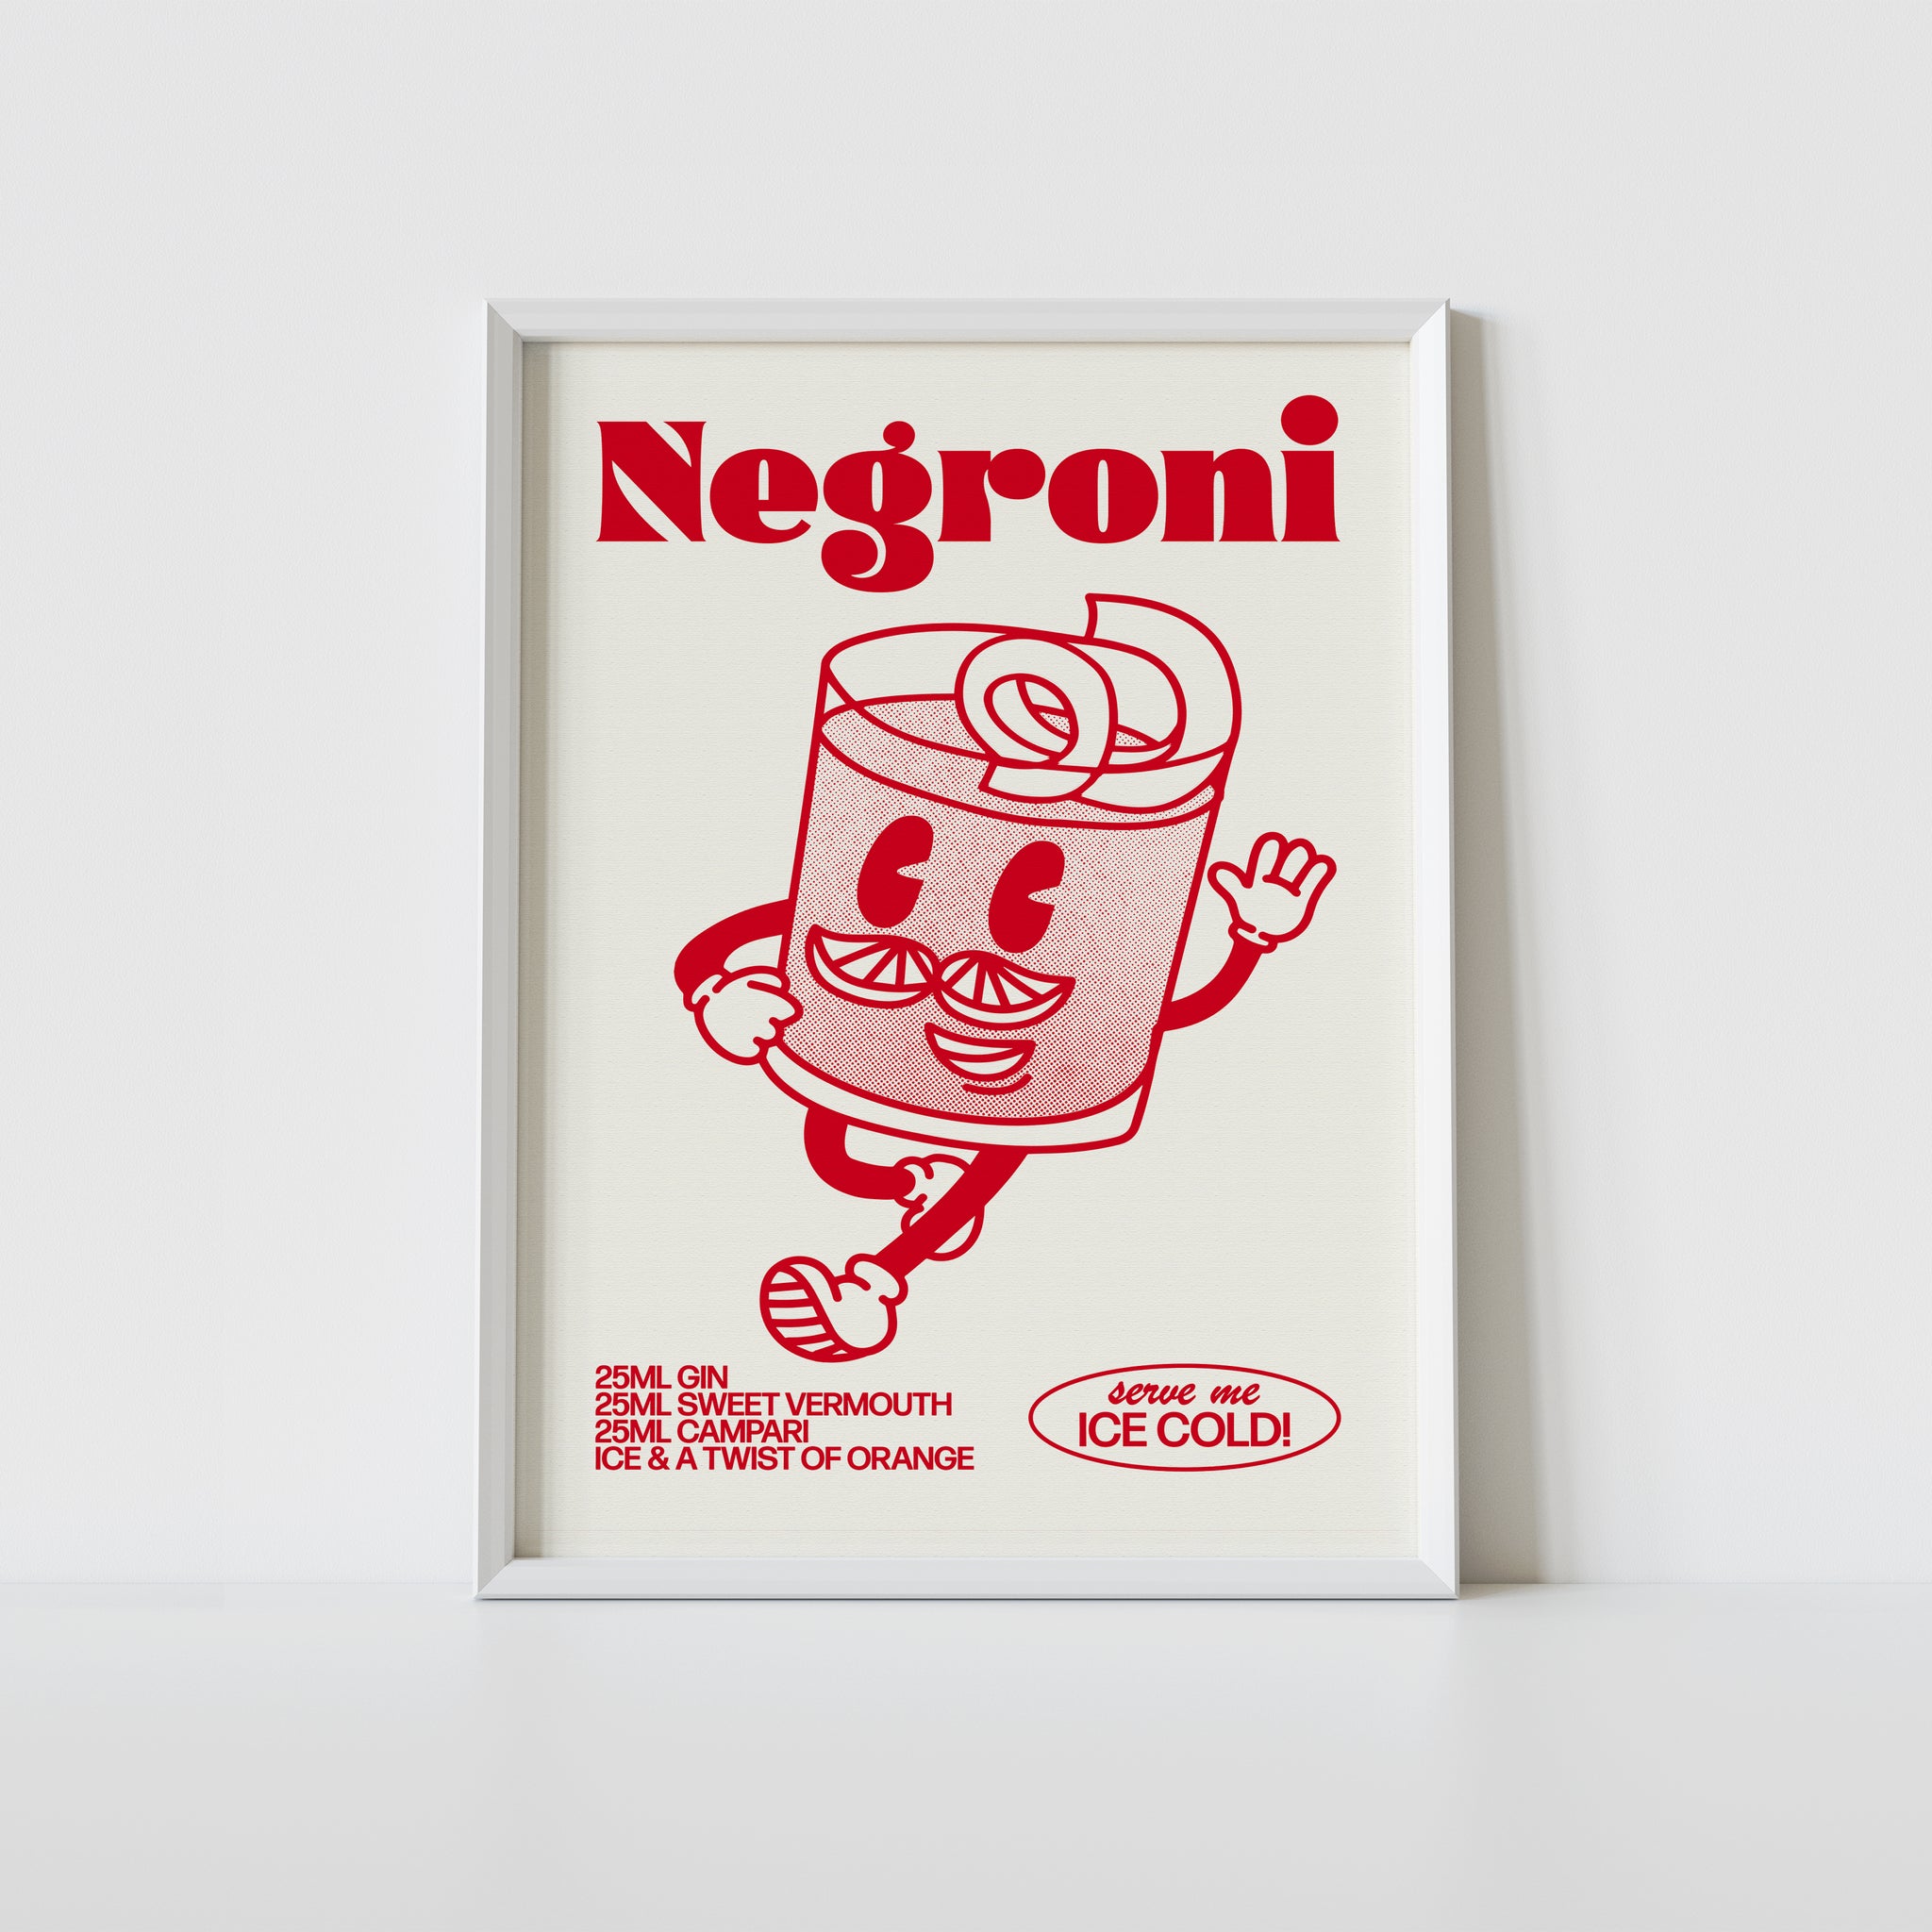 'Negroni' print